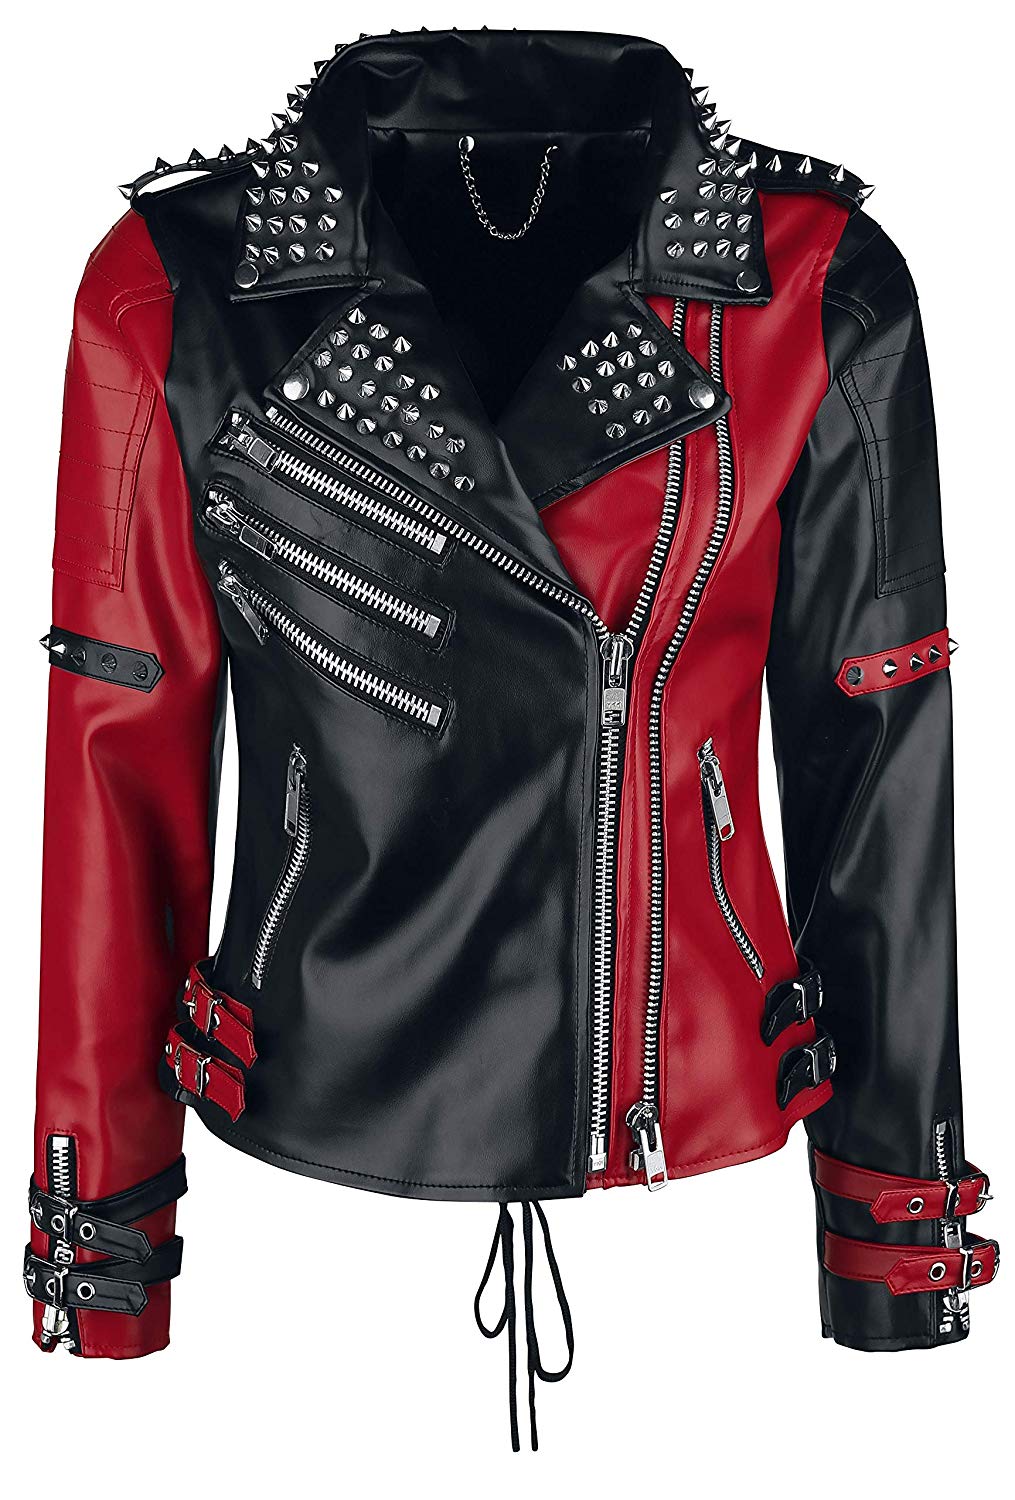 Harley Quinn Motorcycle Jacket - KibrisPDR